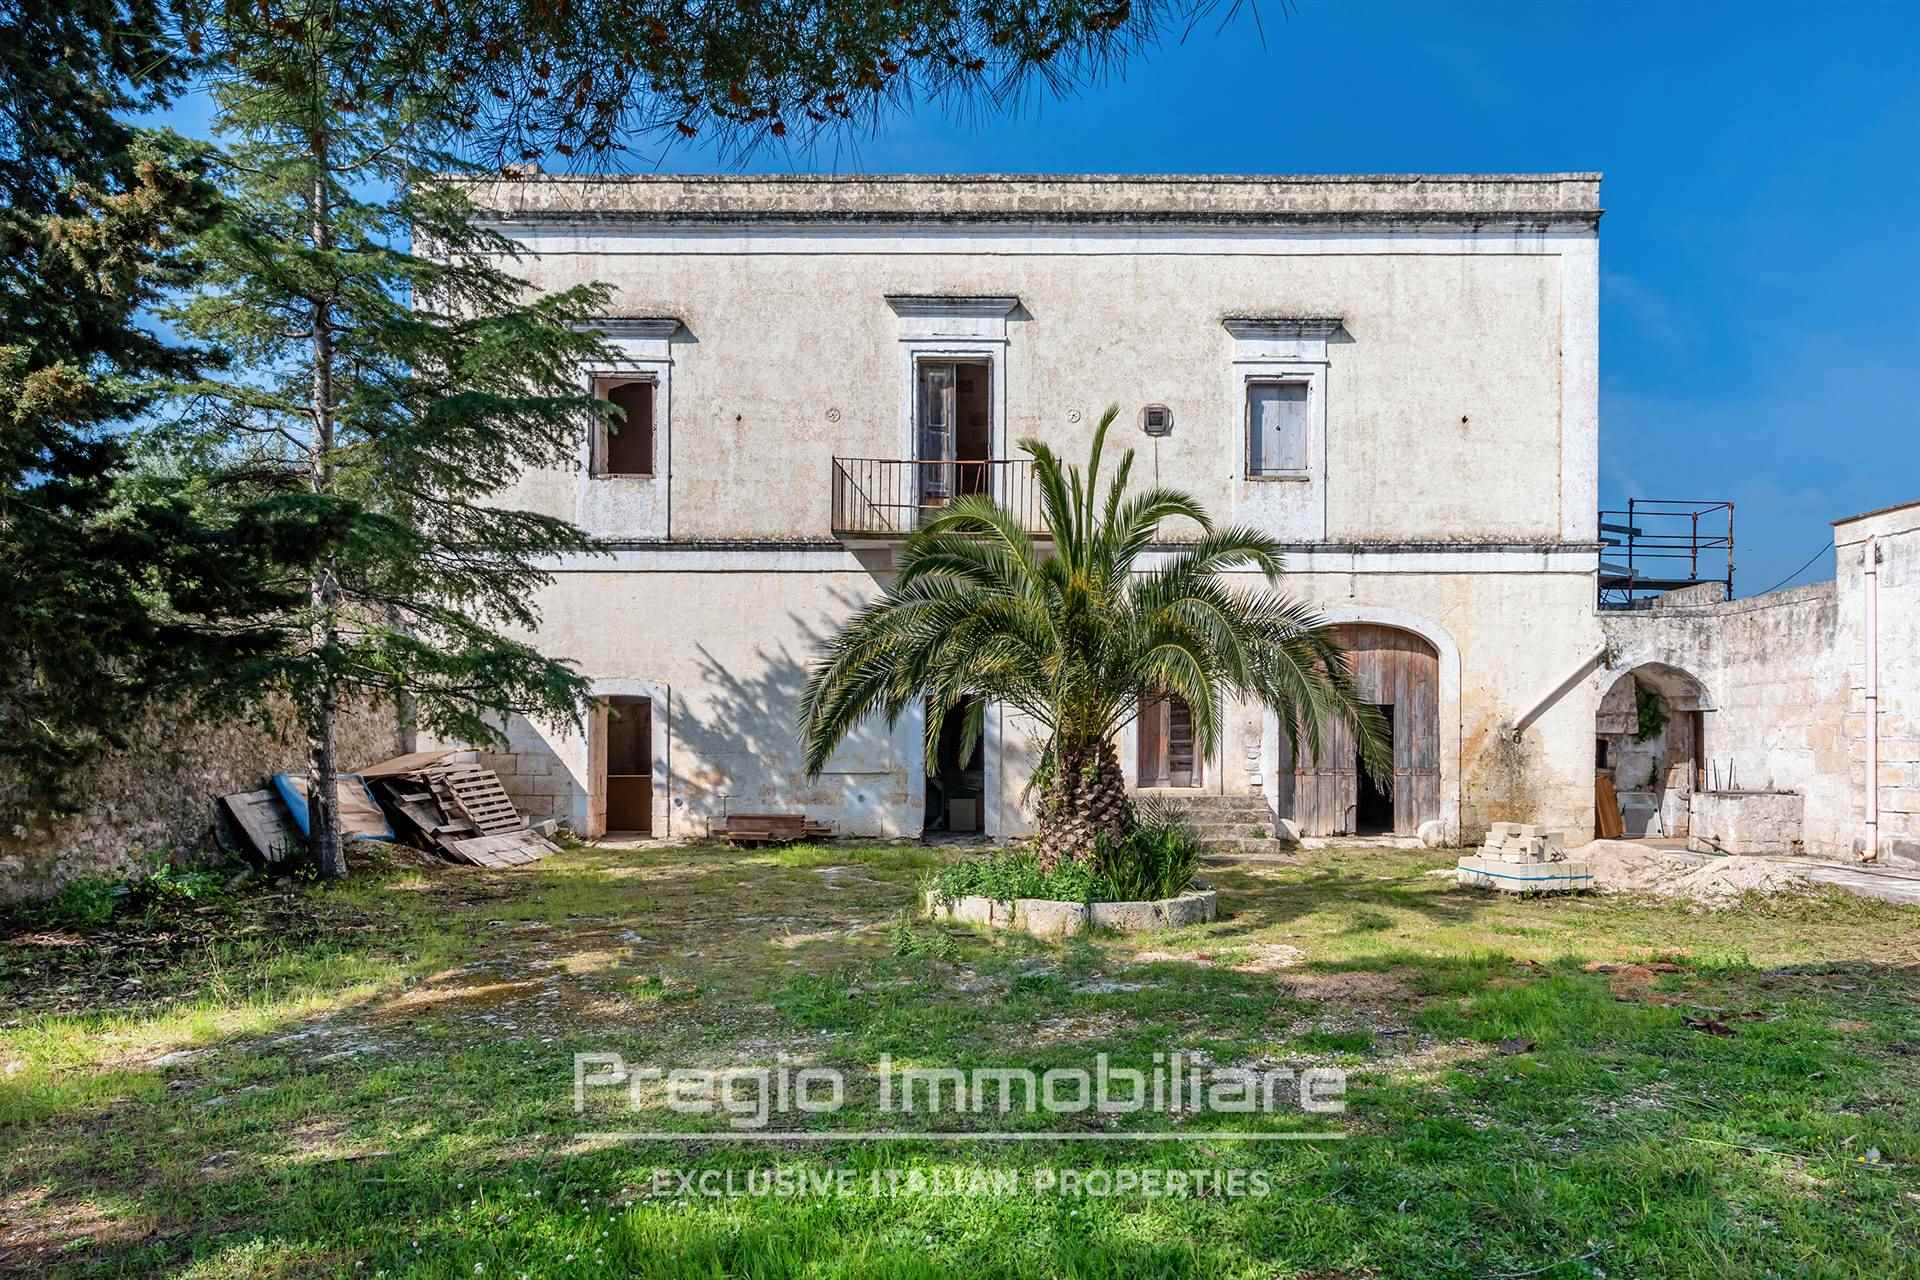 Villa in vendita a Monopoli, 8 locali, prezzo € 630.000 | PortaleAgenzieImmobiliari.it